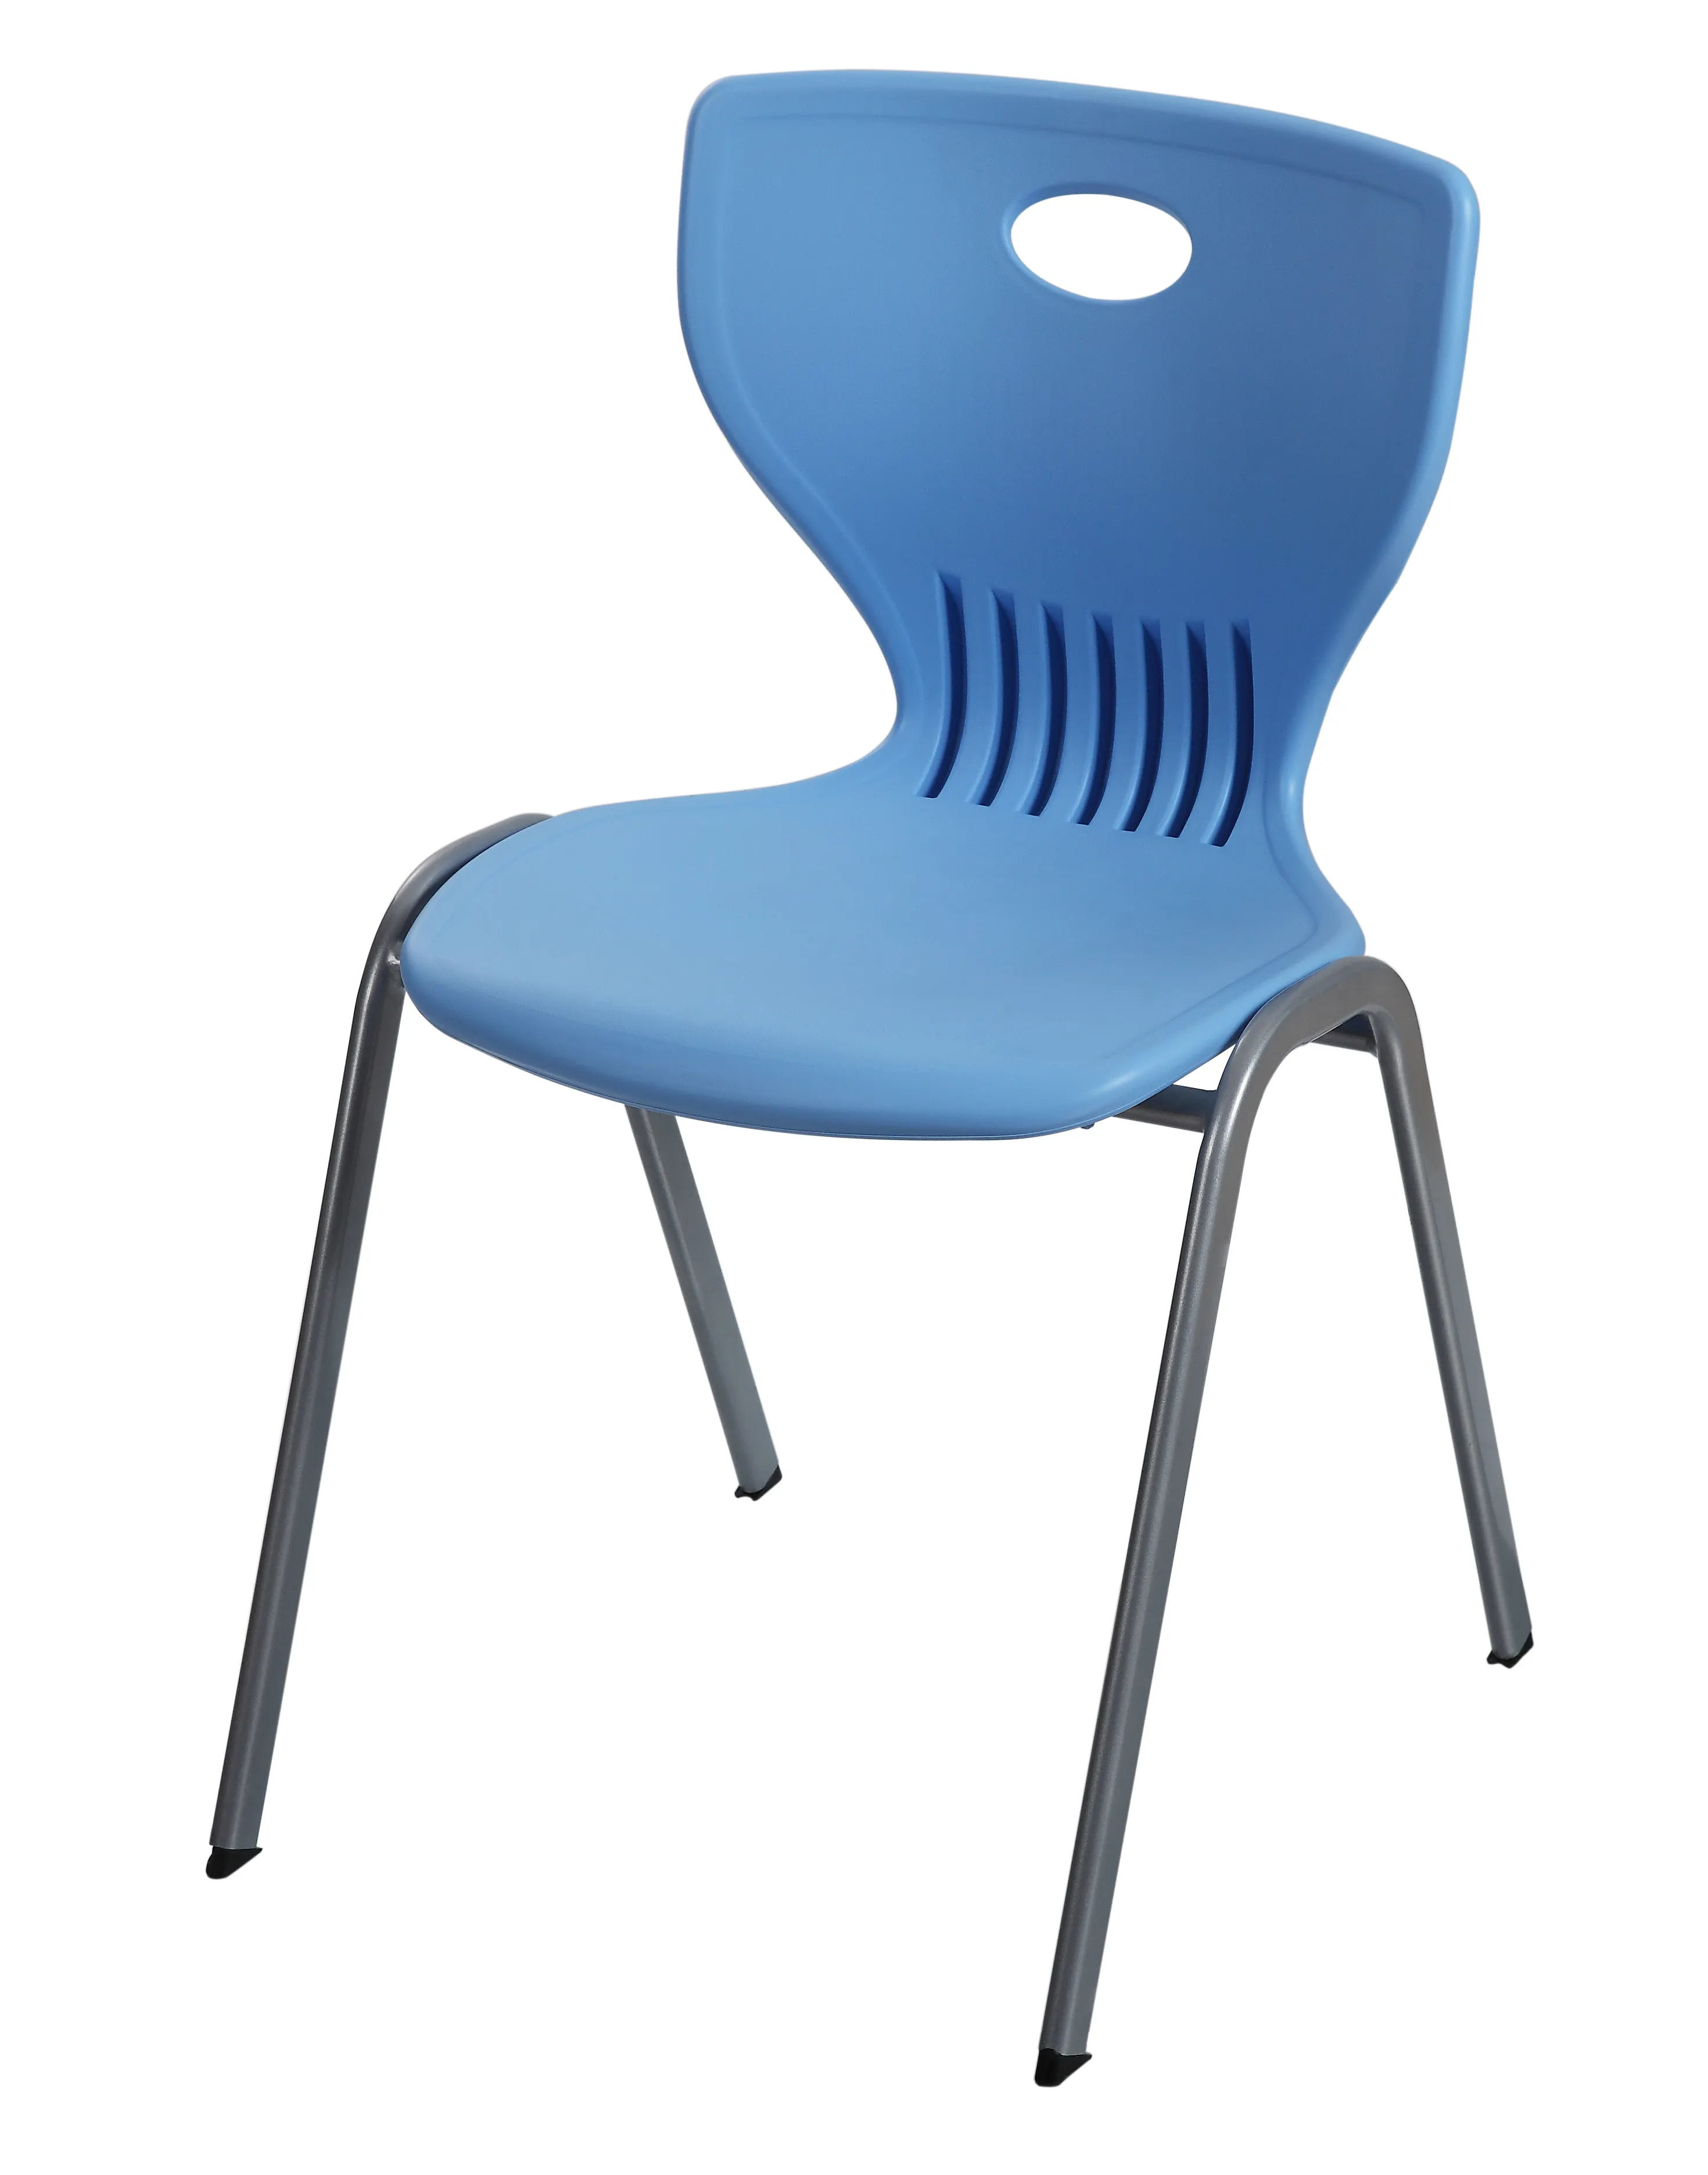 Mobiliário escolar assentos e encostos plásticos empilháveis Faculdade Estudo da mobília Classroom Cadeiras escolares